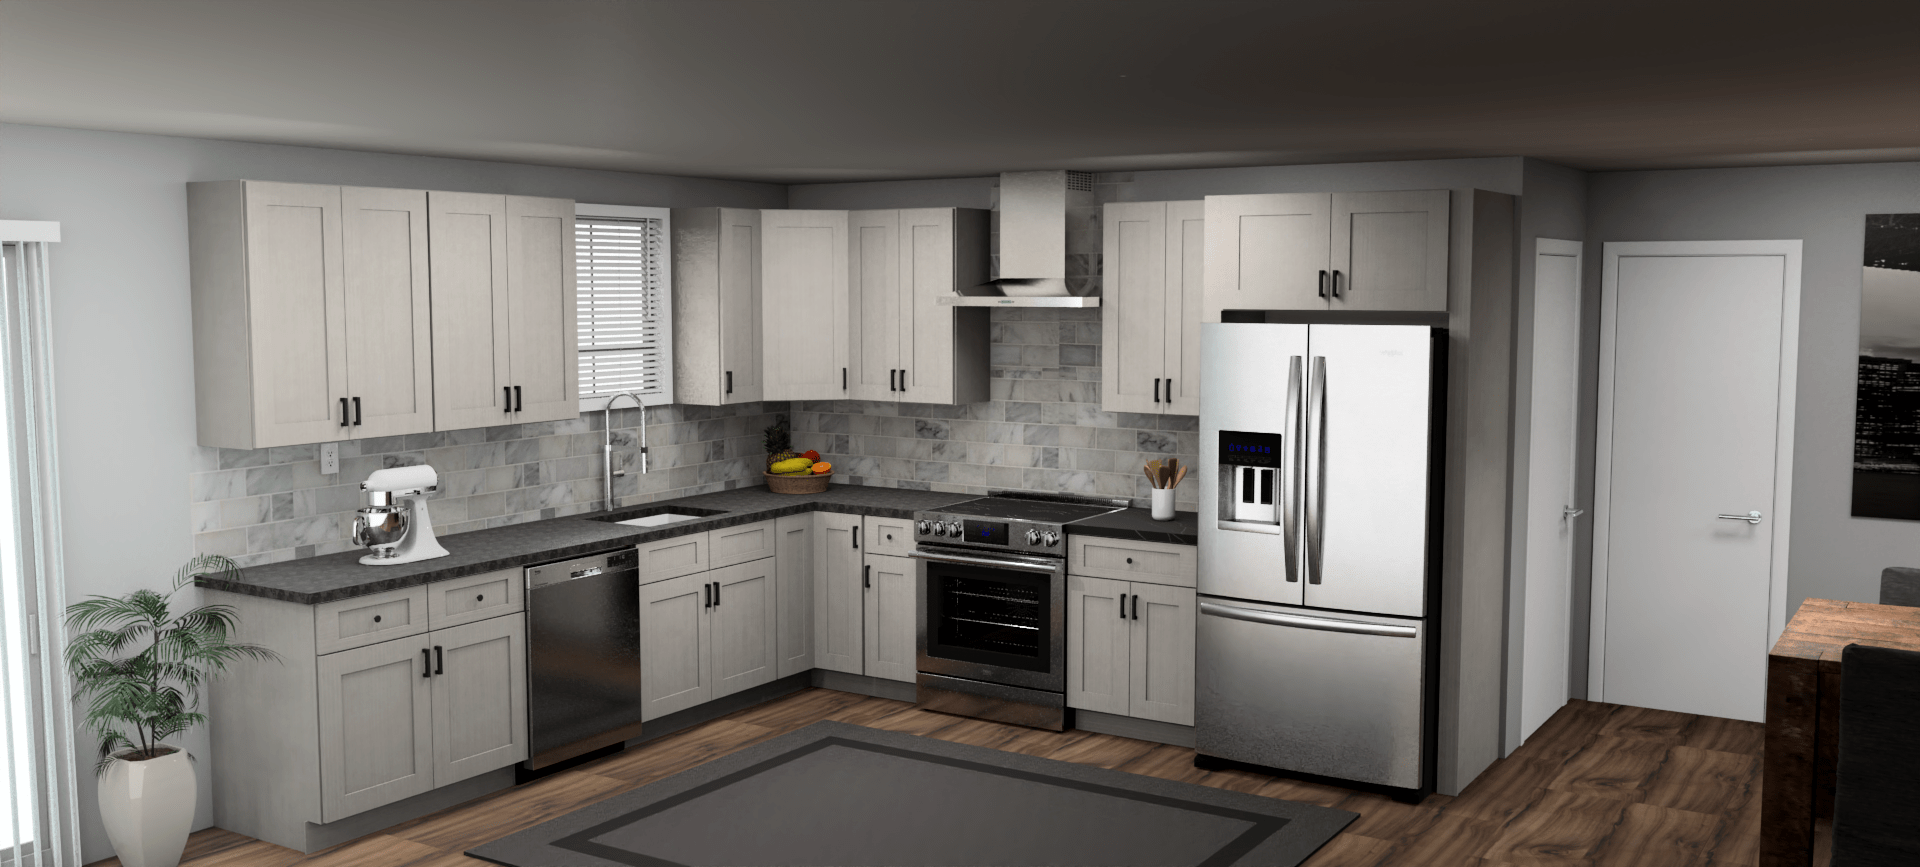 Fabuwood Allure Galaxy Horizon 11 x 12 L Shaped Kitchen Main Layout Photo